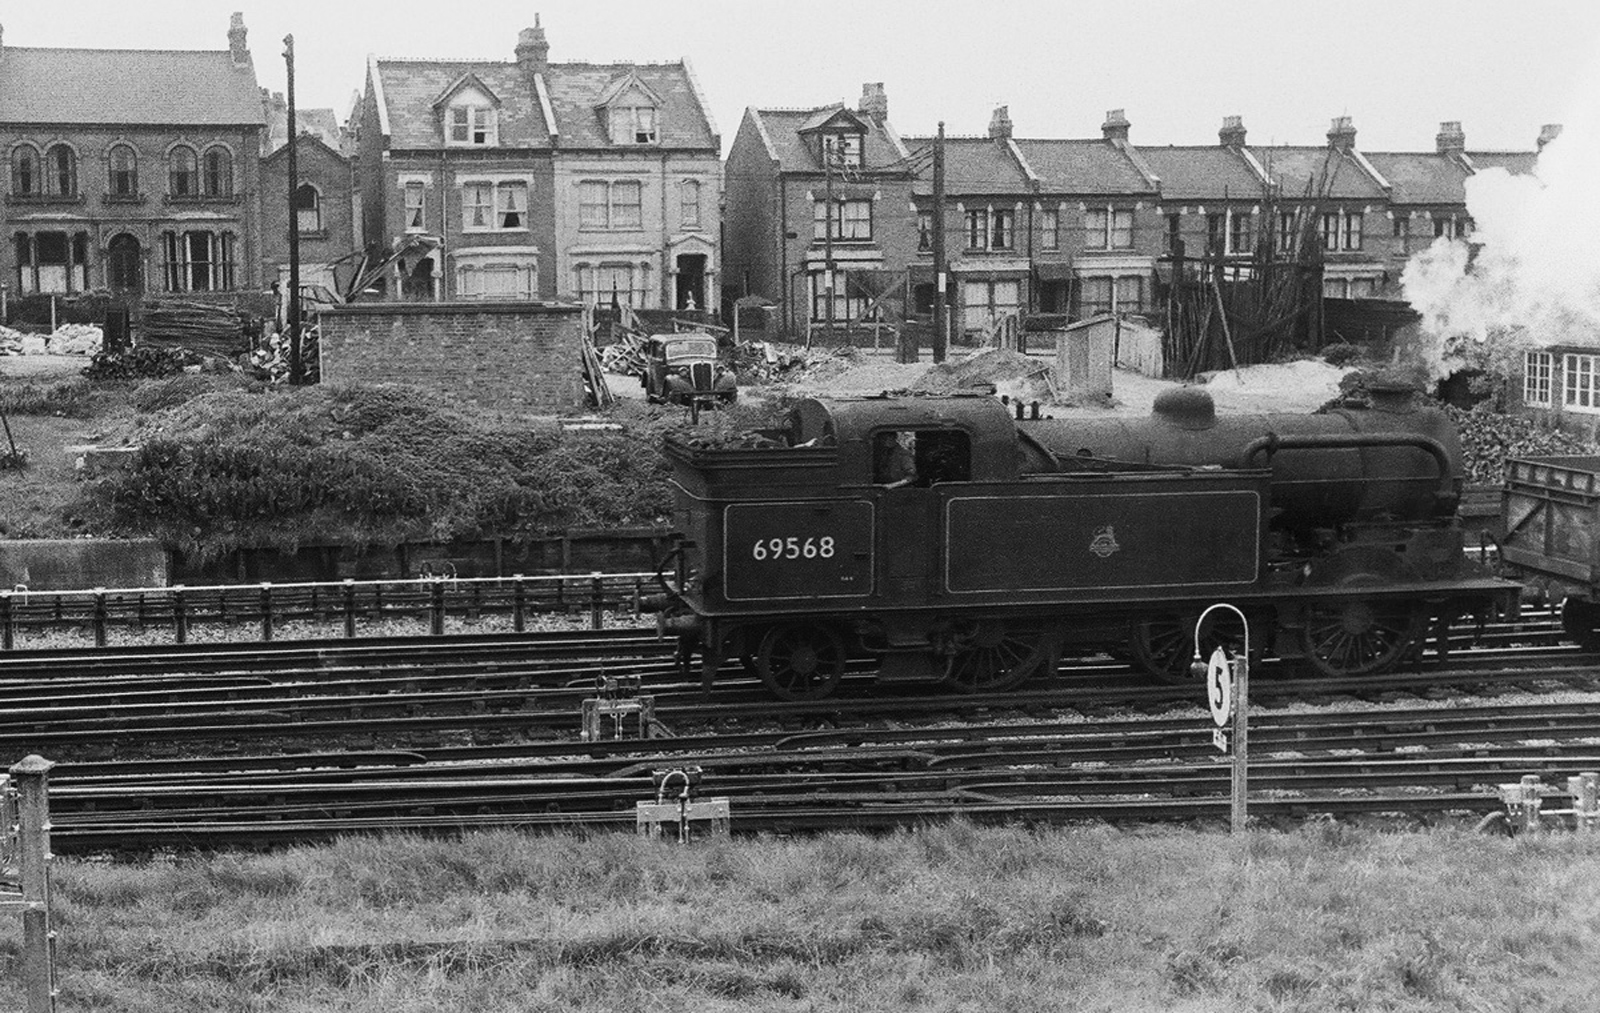 Stewartov interes za prave modele željeznice započeo je u djetinjstvu dok je živio na sjeveru Londona te putovao na odmor s roditeljima u obalni grad Bognor Regis.